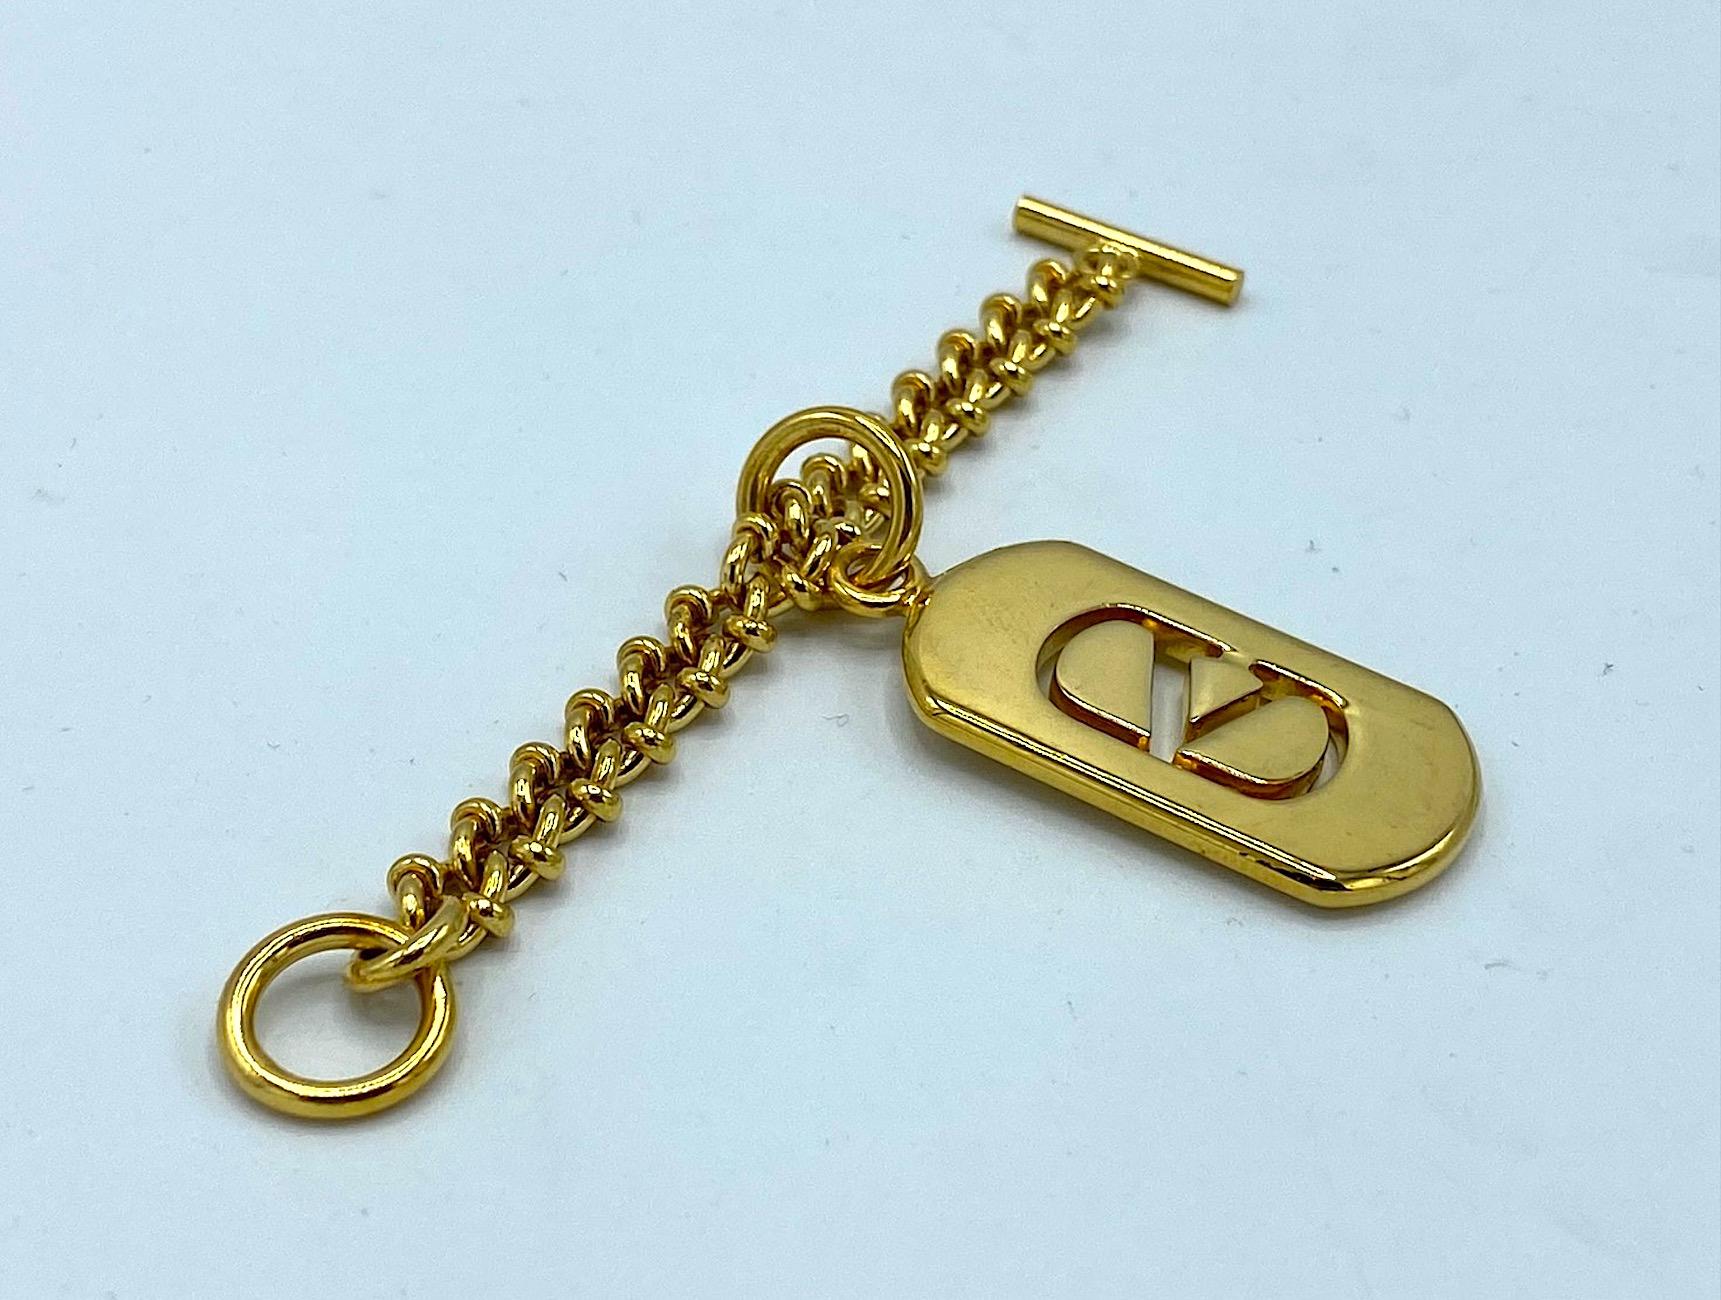 Eine schöne Vintage Valentino Goldplatte Schlüsselanhänger mit Logo Hundemarke Charme. Der Anhänger ist rechteckig mit gebogenen Enden. Das Valentino-Logo ist aus dem Metall geschnitten. Der Anhänger oder Charme ist etwa 0,75  Zoll breit und 1,5